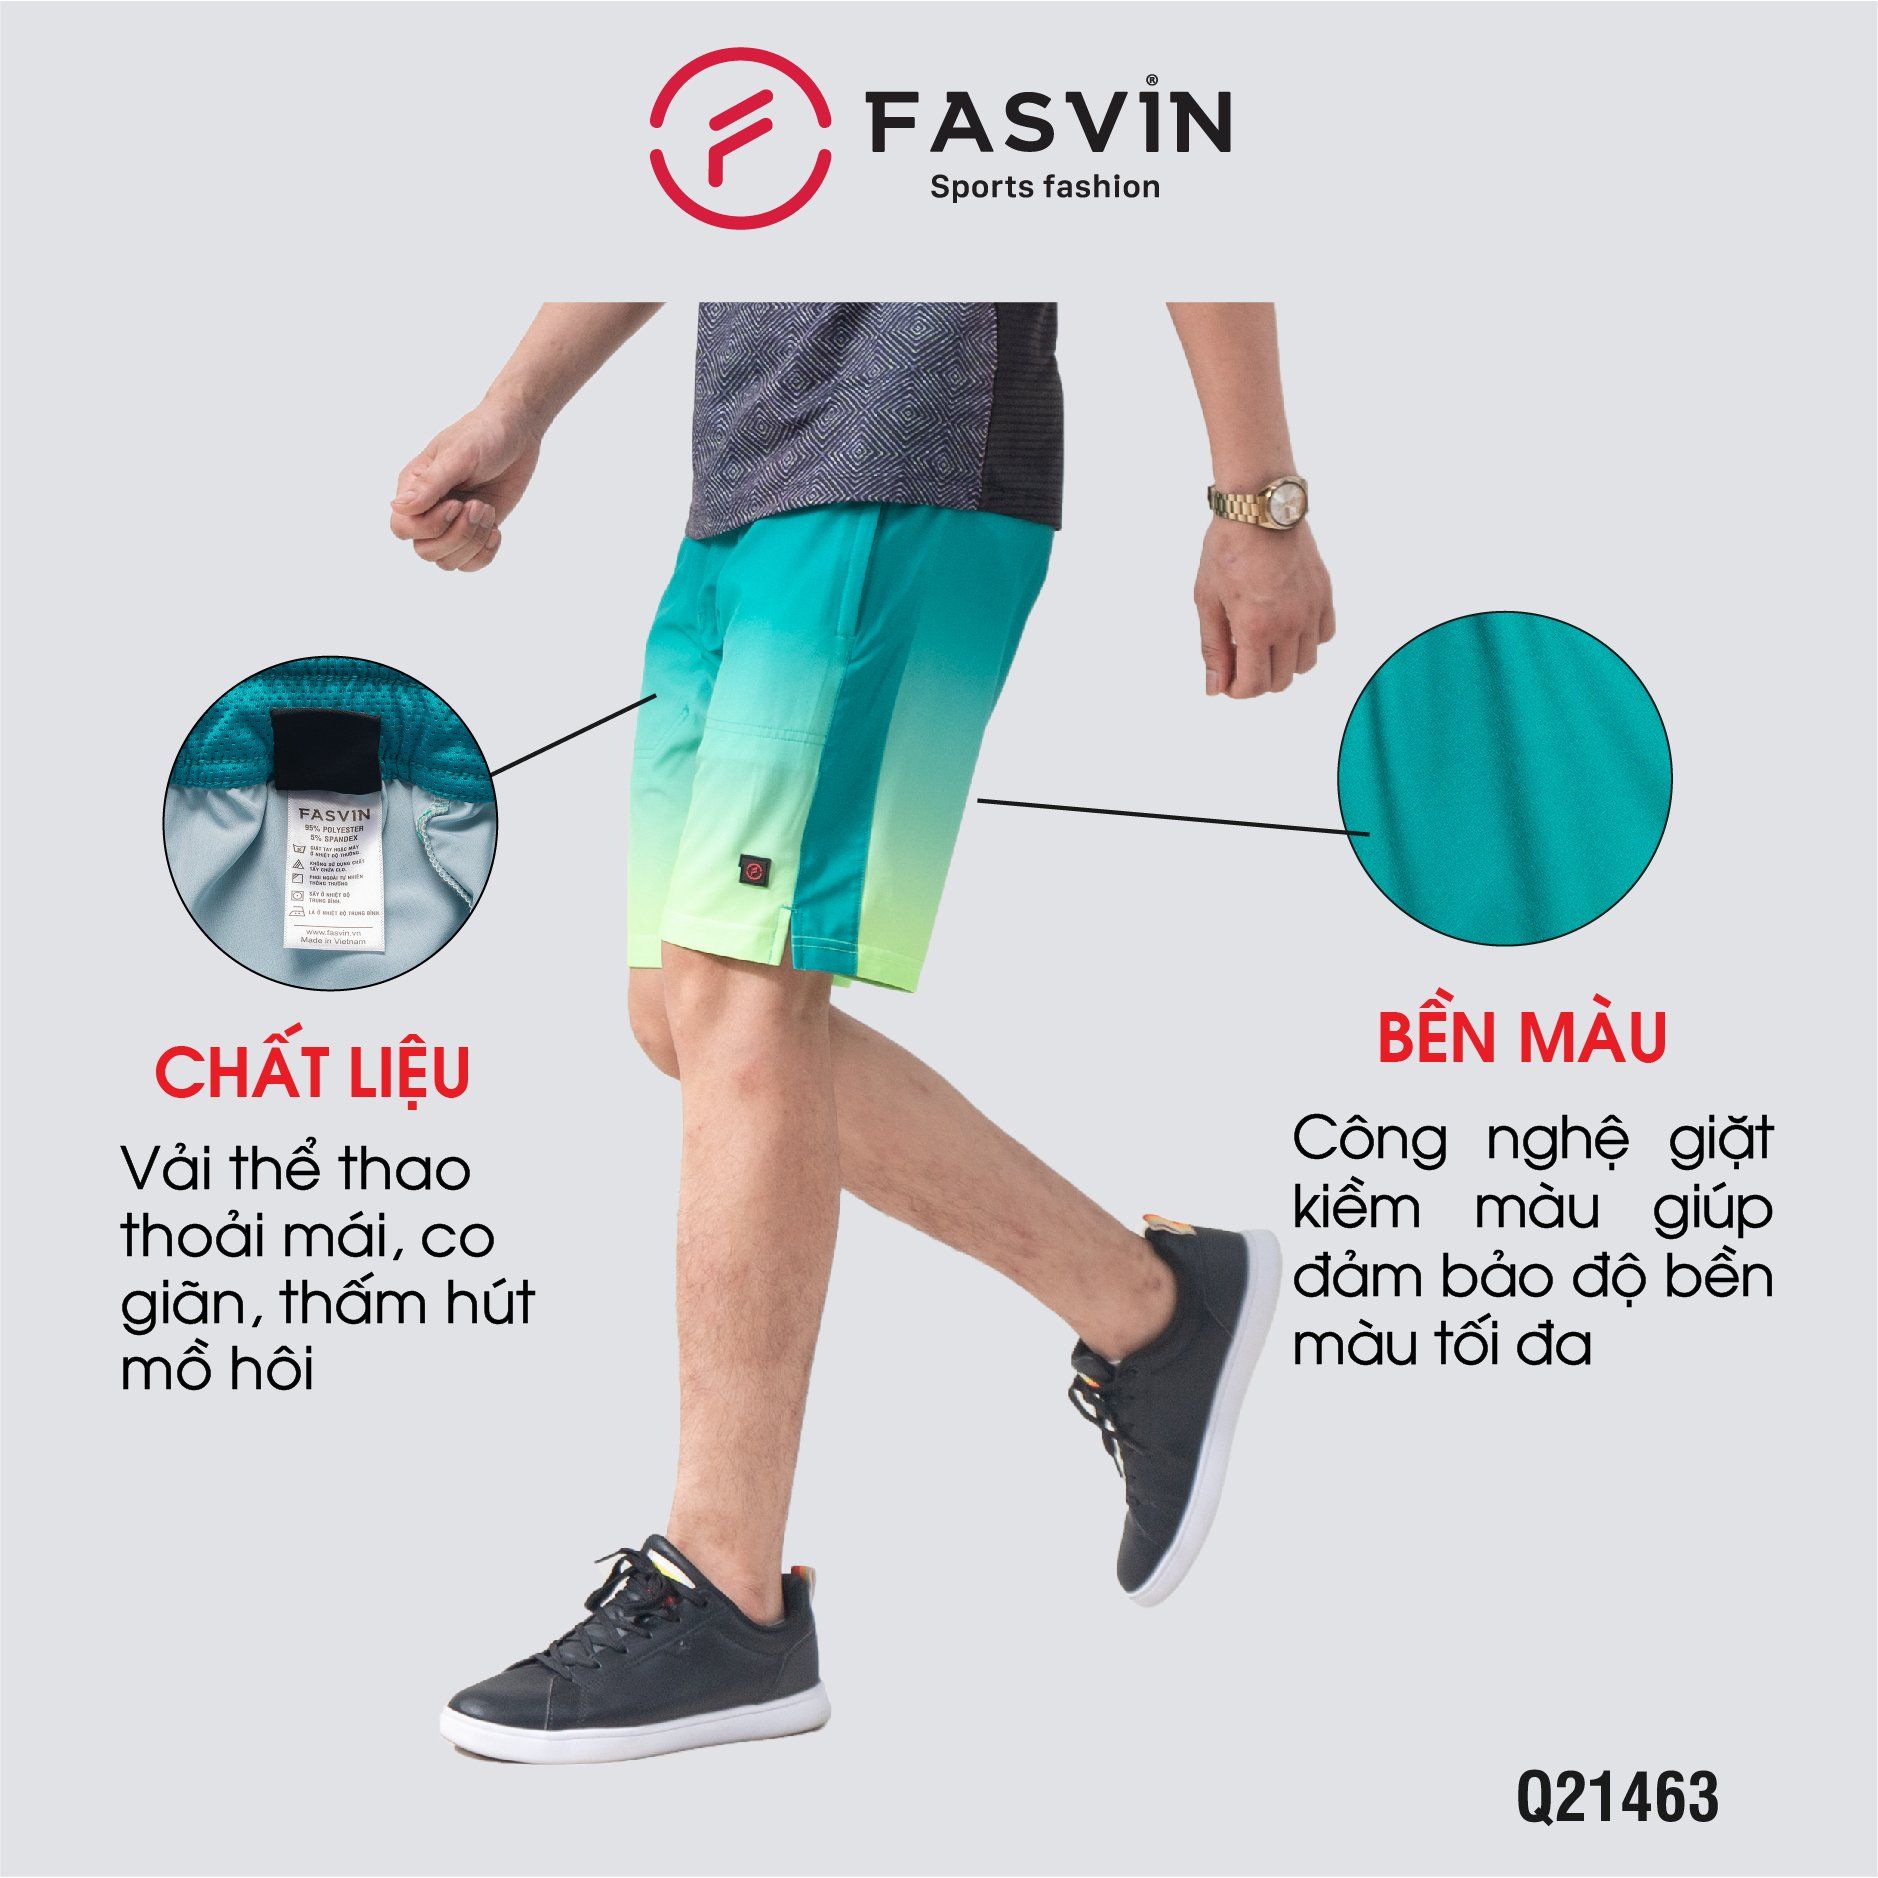  Quần short nam thể thao Fasvin vải gió in thăng hoa co giãn mềm mát S21463 